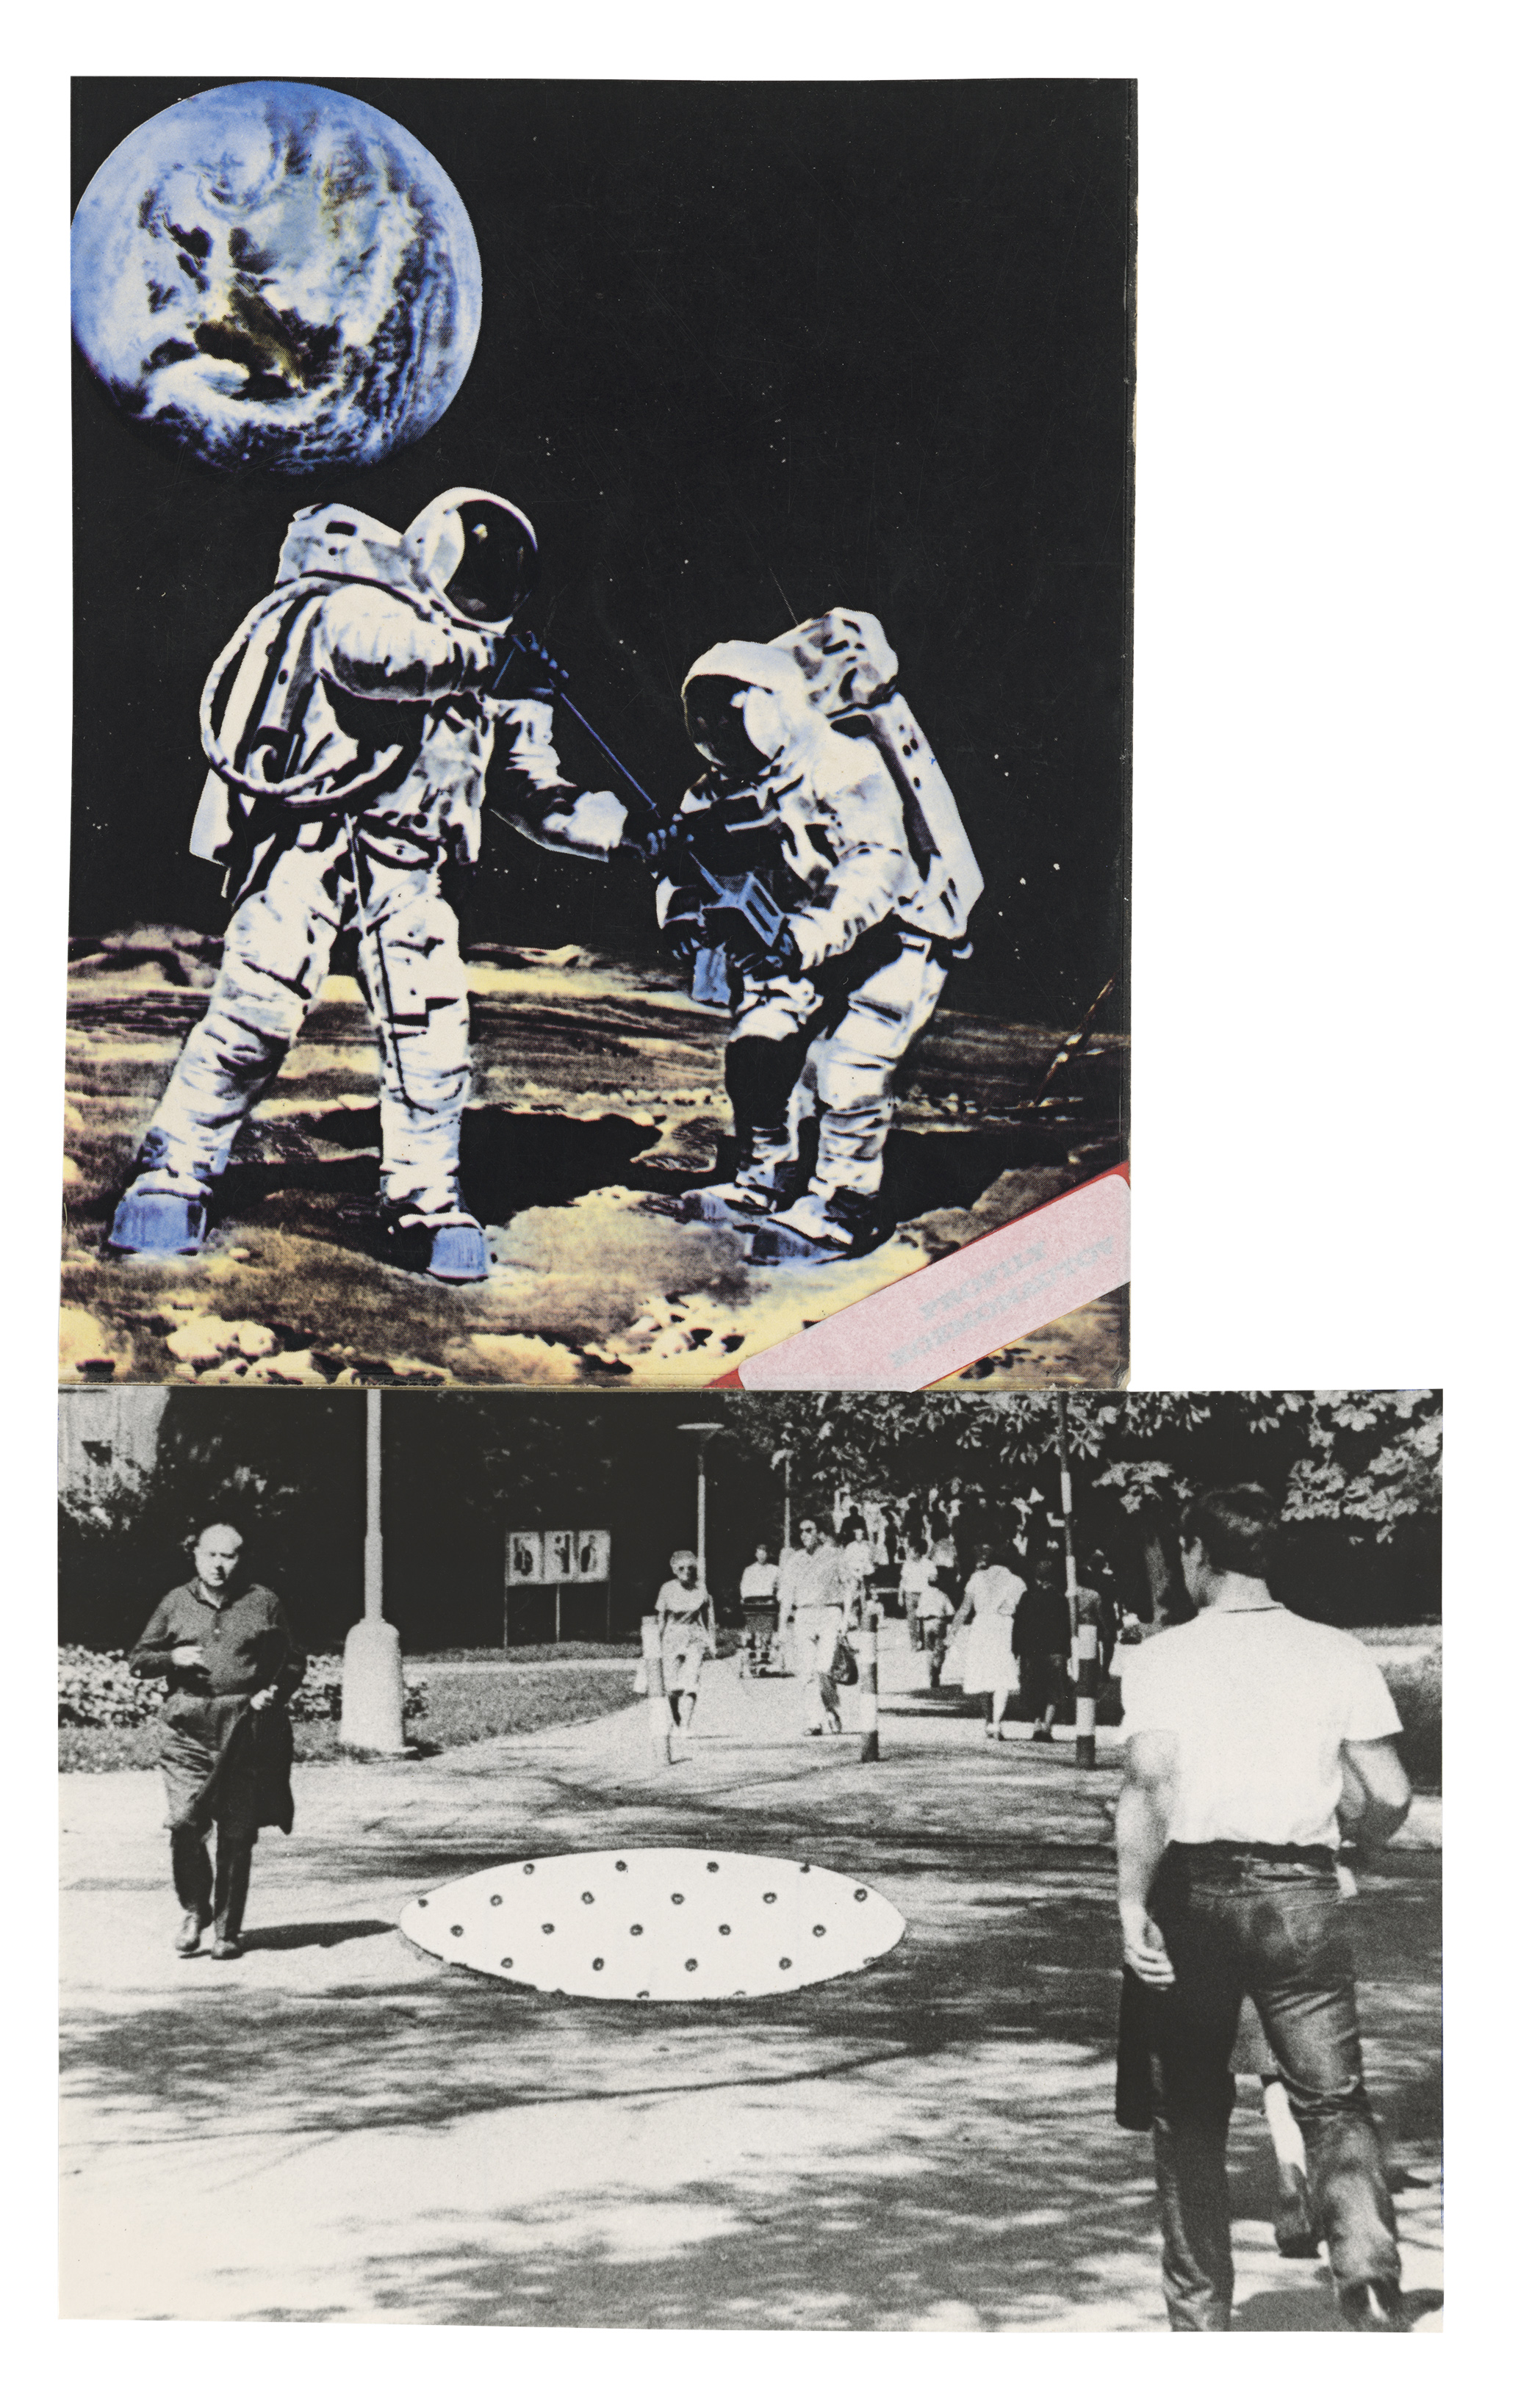 Stano Filko: Let kozmonautov na Mesiac a späť. 1970 – 1995. 26 × 16 cm , koláž, montáž. Archív SF, SNG, Bratislava